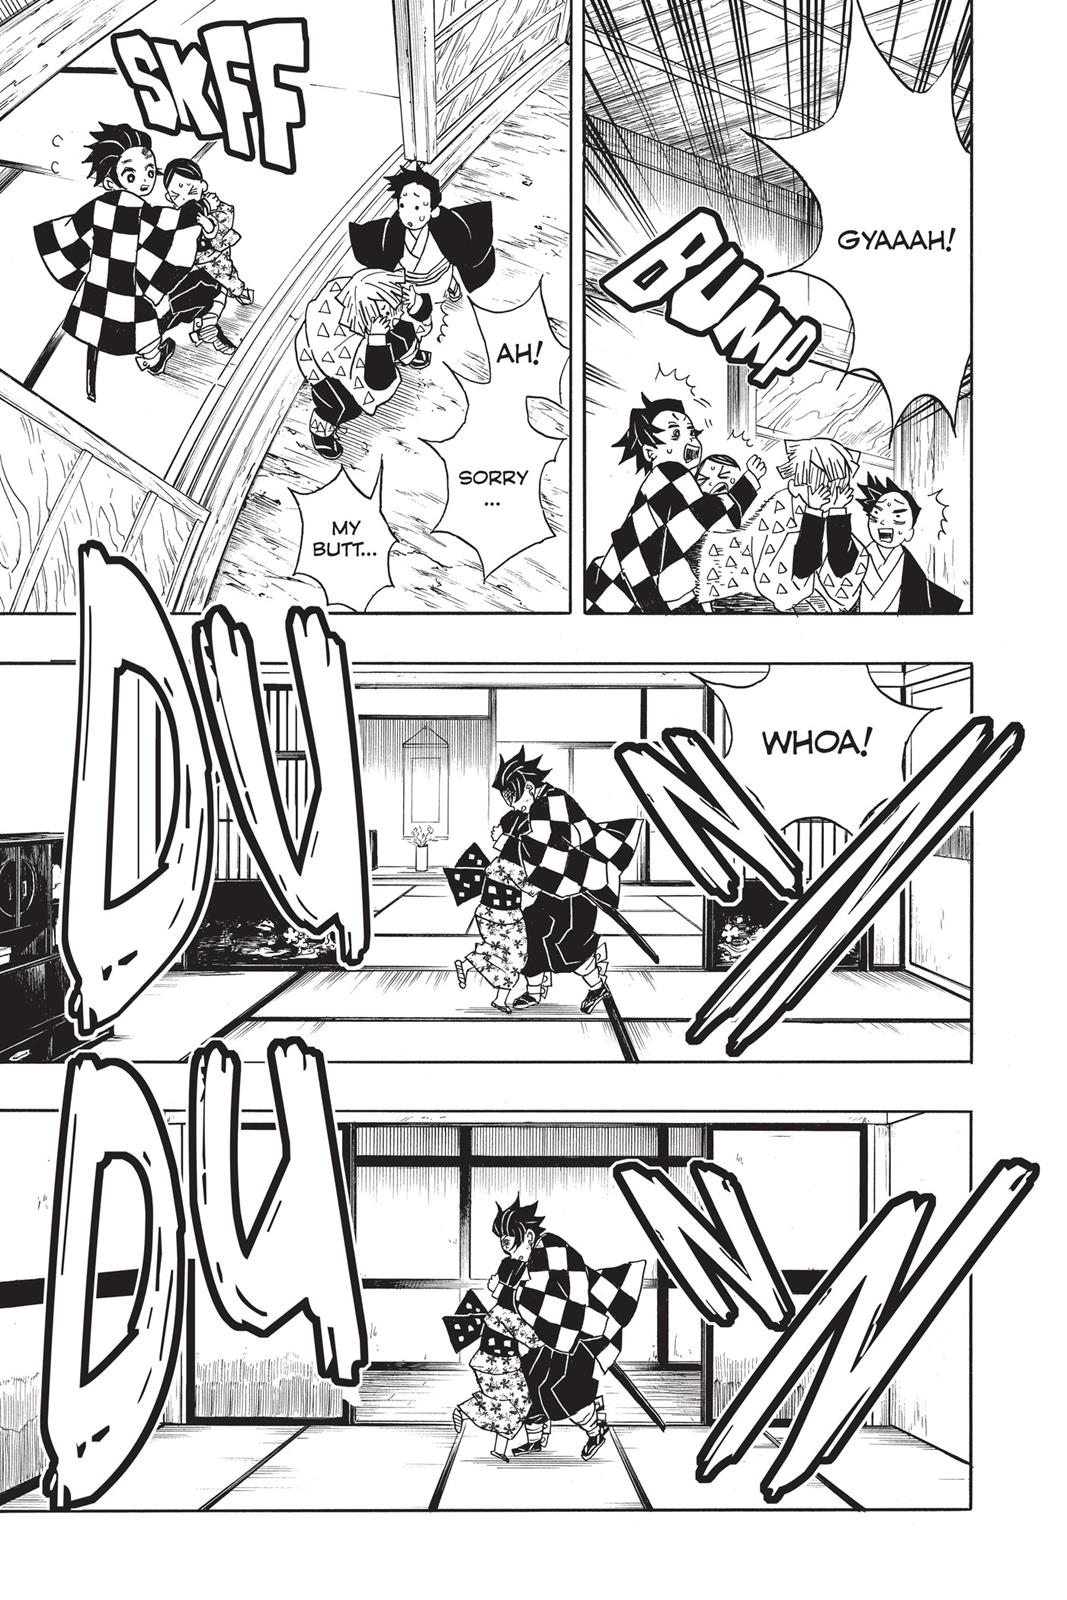 Demon Slayer Manga Manga Chapter - 21 - image 3